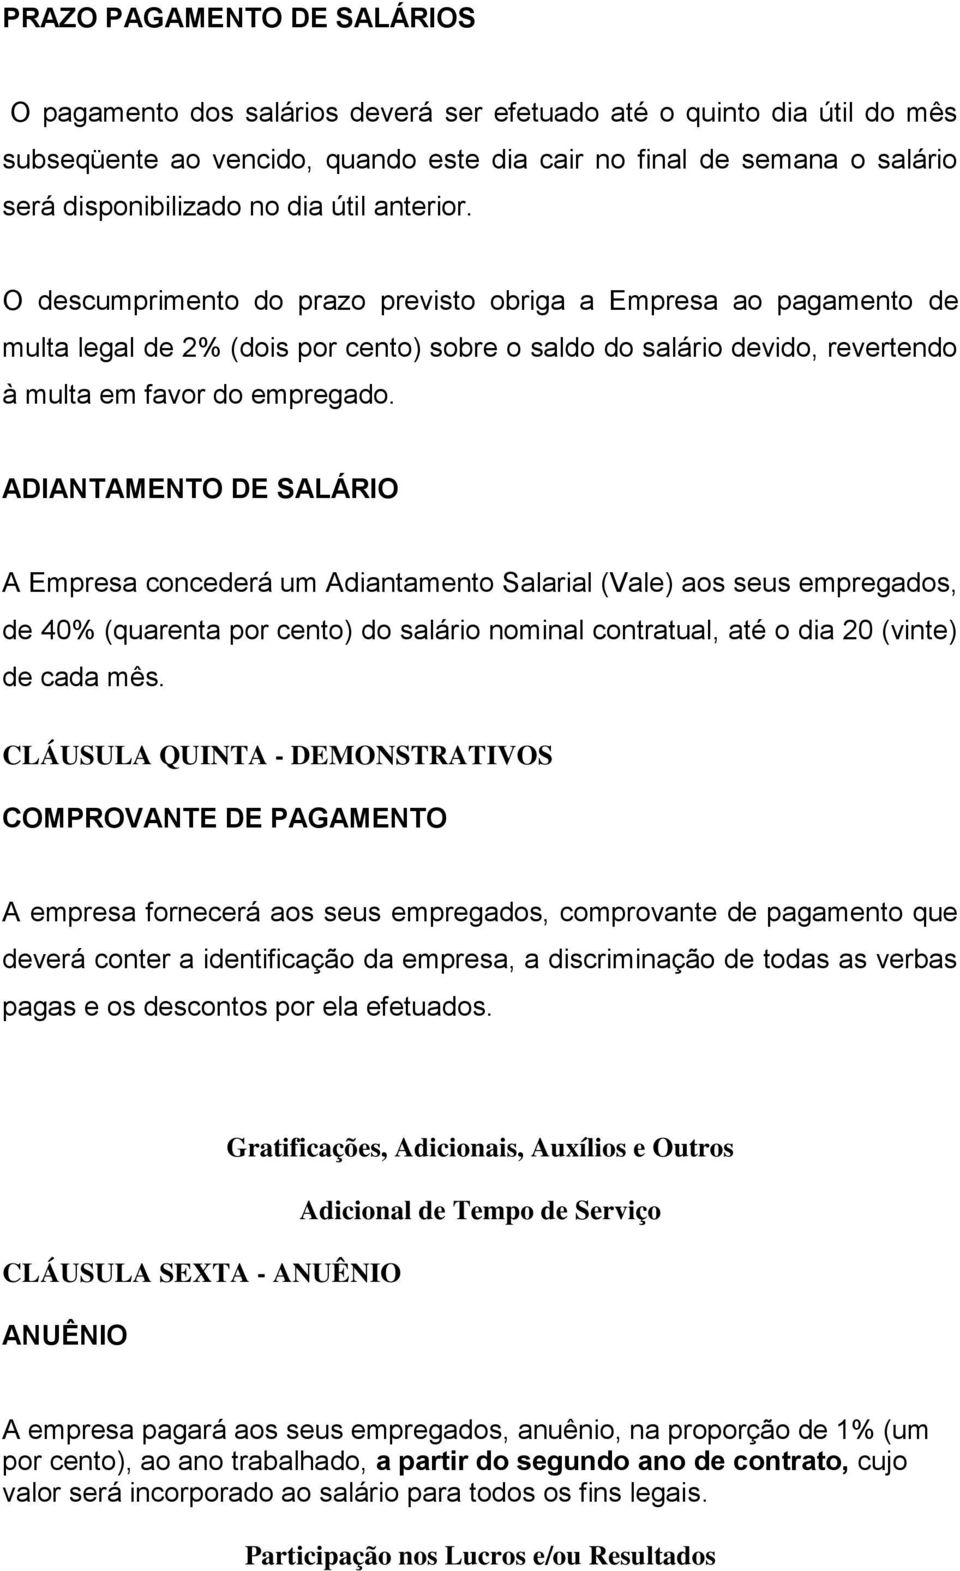 ADIANTAMENTO DE SALÁRIO A Empresa concederá um Adiantamento Salarial (Vale) aos seus empregados, de 40% (quarenta por cento) do salário nominal contratual, até o dia 20 (vinte) de cada mês.